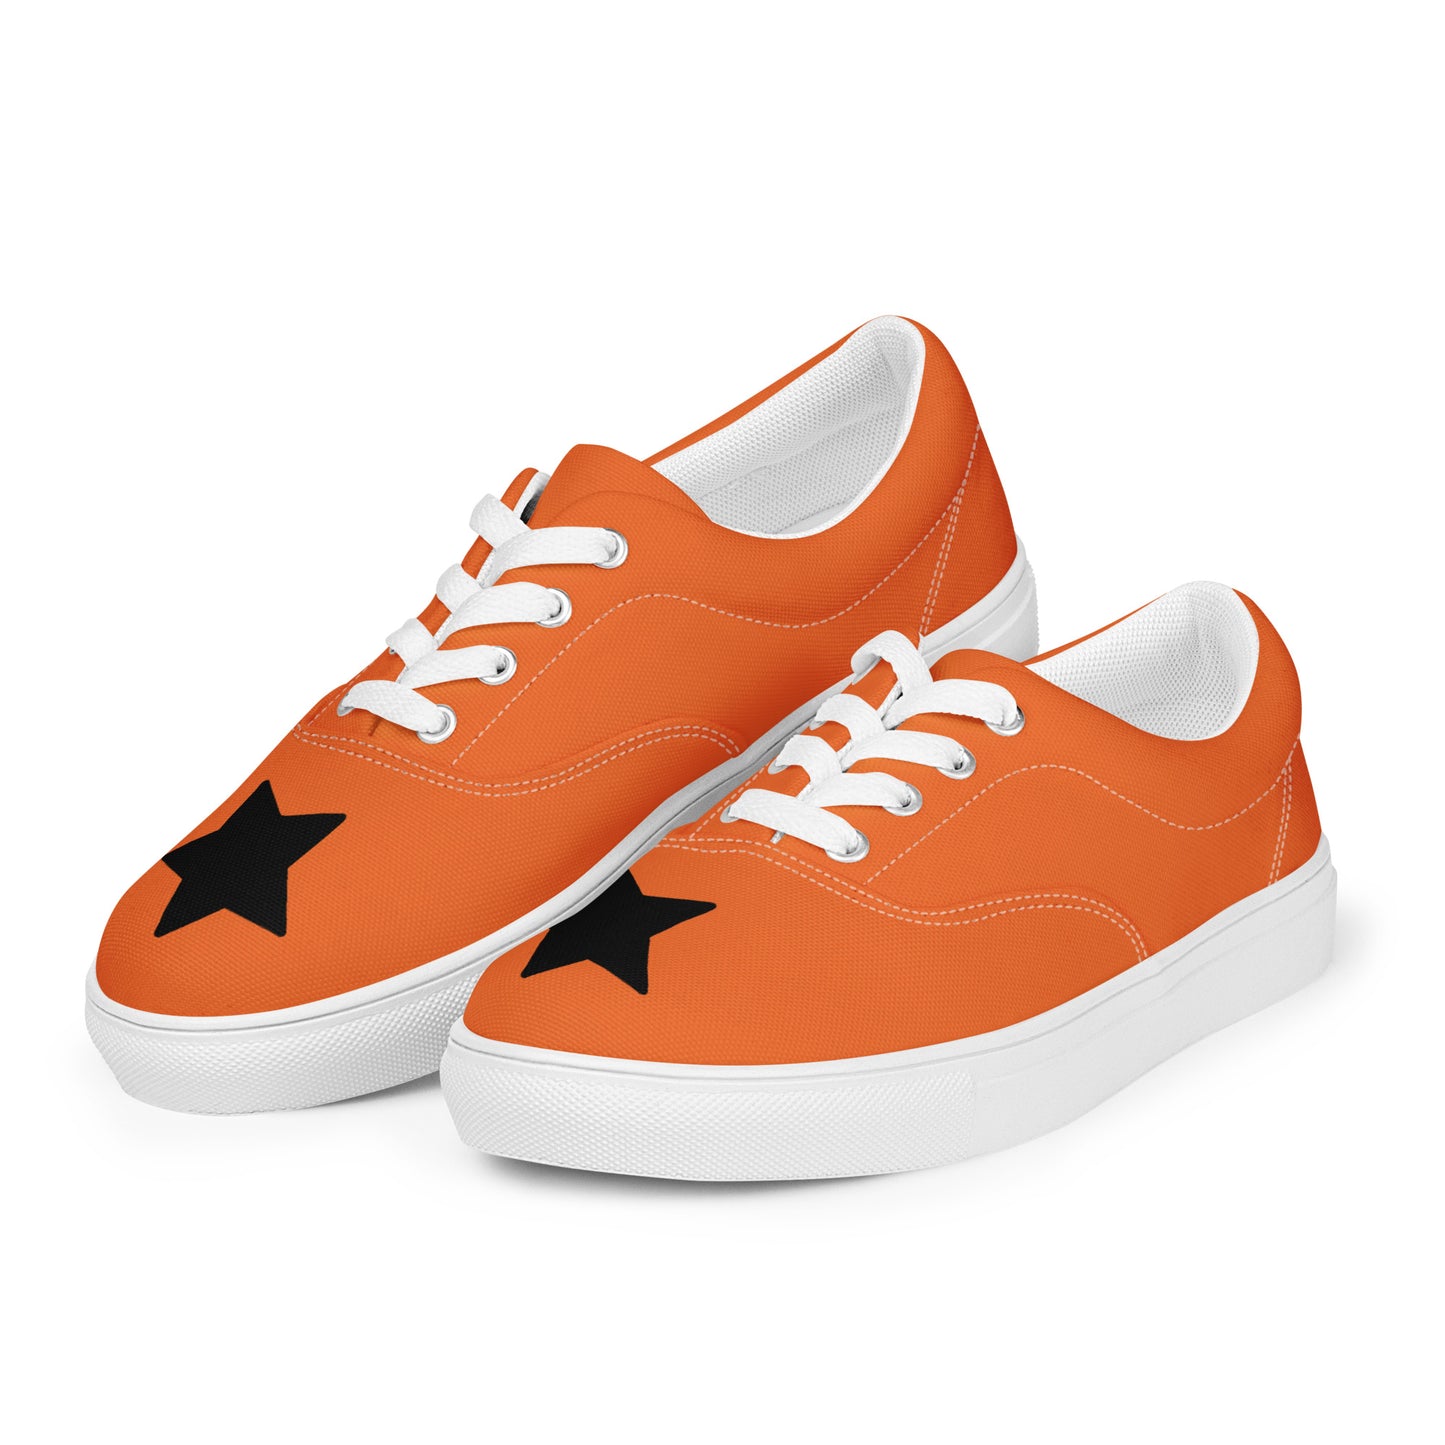 Women’s Black Star Orange Lace-up Canvas Shoes